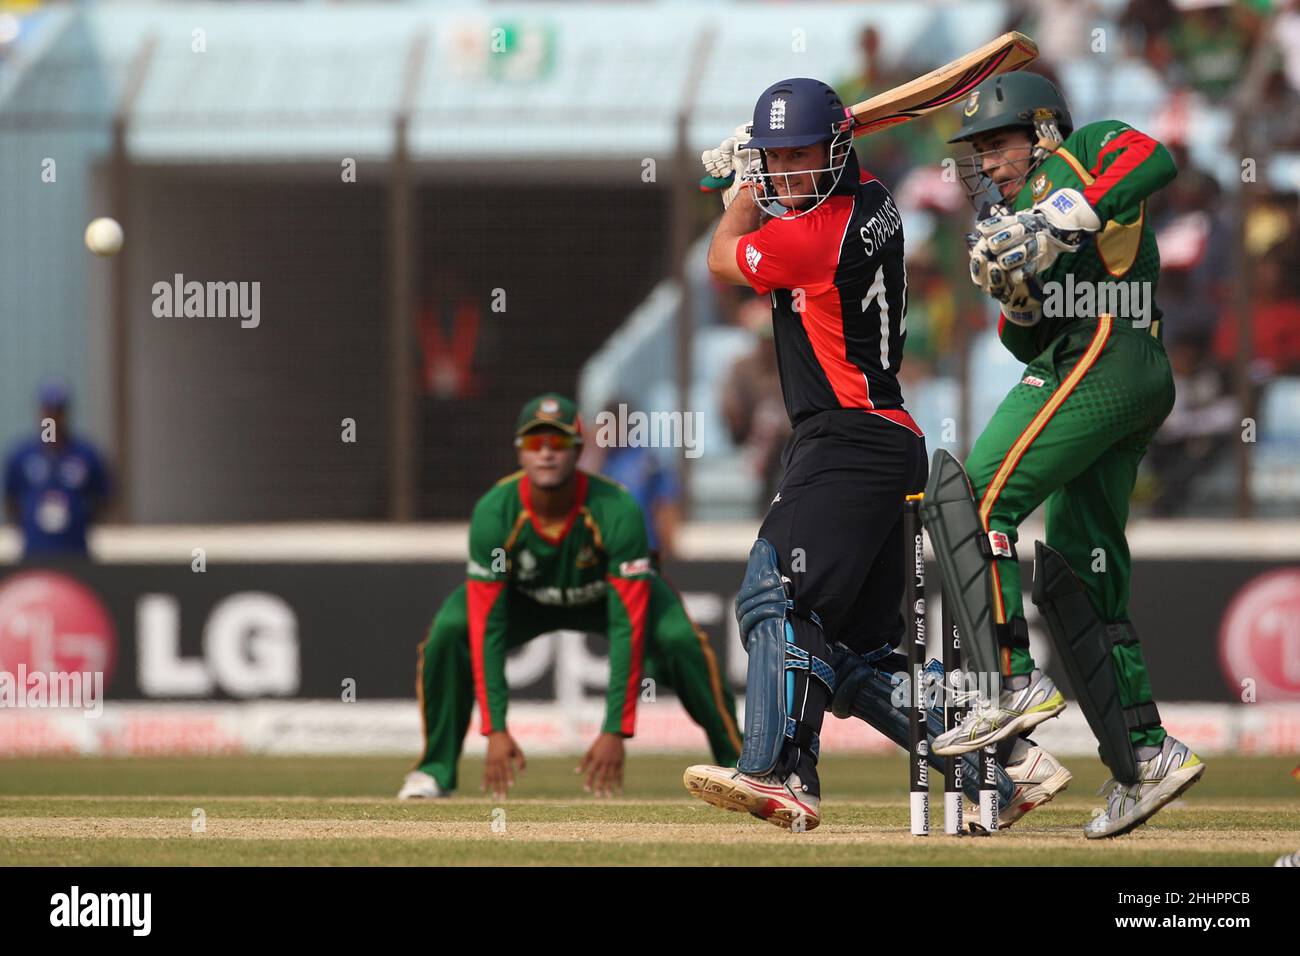 Giocatore di cricket inglese, Andrew Strauss visto in azione durante la partita del 28th, ICC (International Cricket Council) Coppa del mondo di cricket tra Bangladesh e Inghilterra a Chittagong. Il Bangladesh ha vinto con 2 wickets (con 6 palle rimanenti). Foto Stock